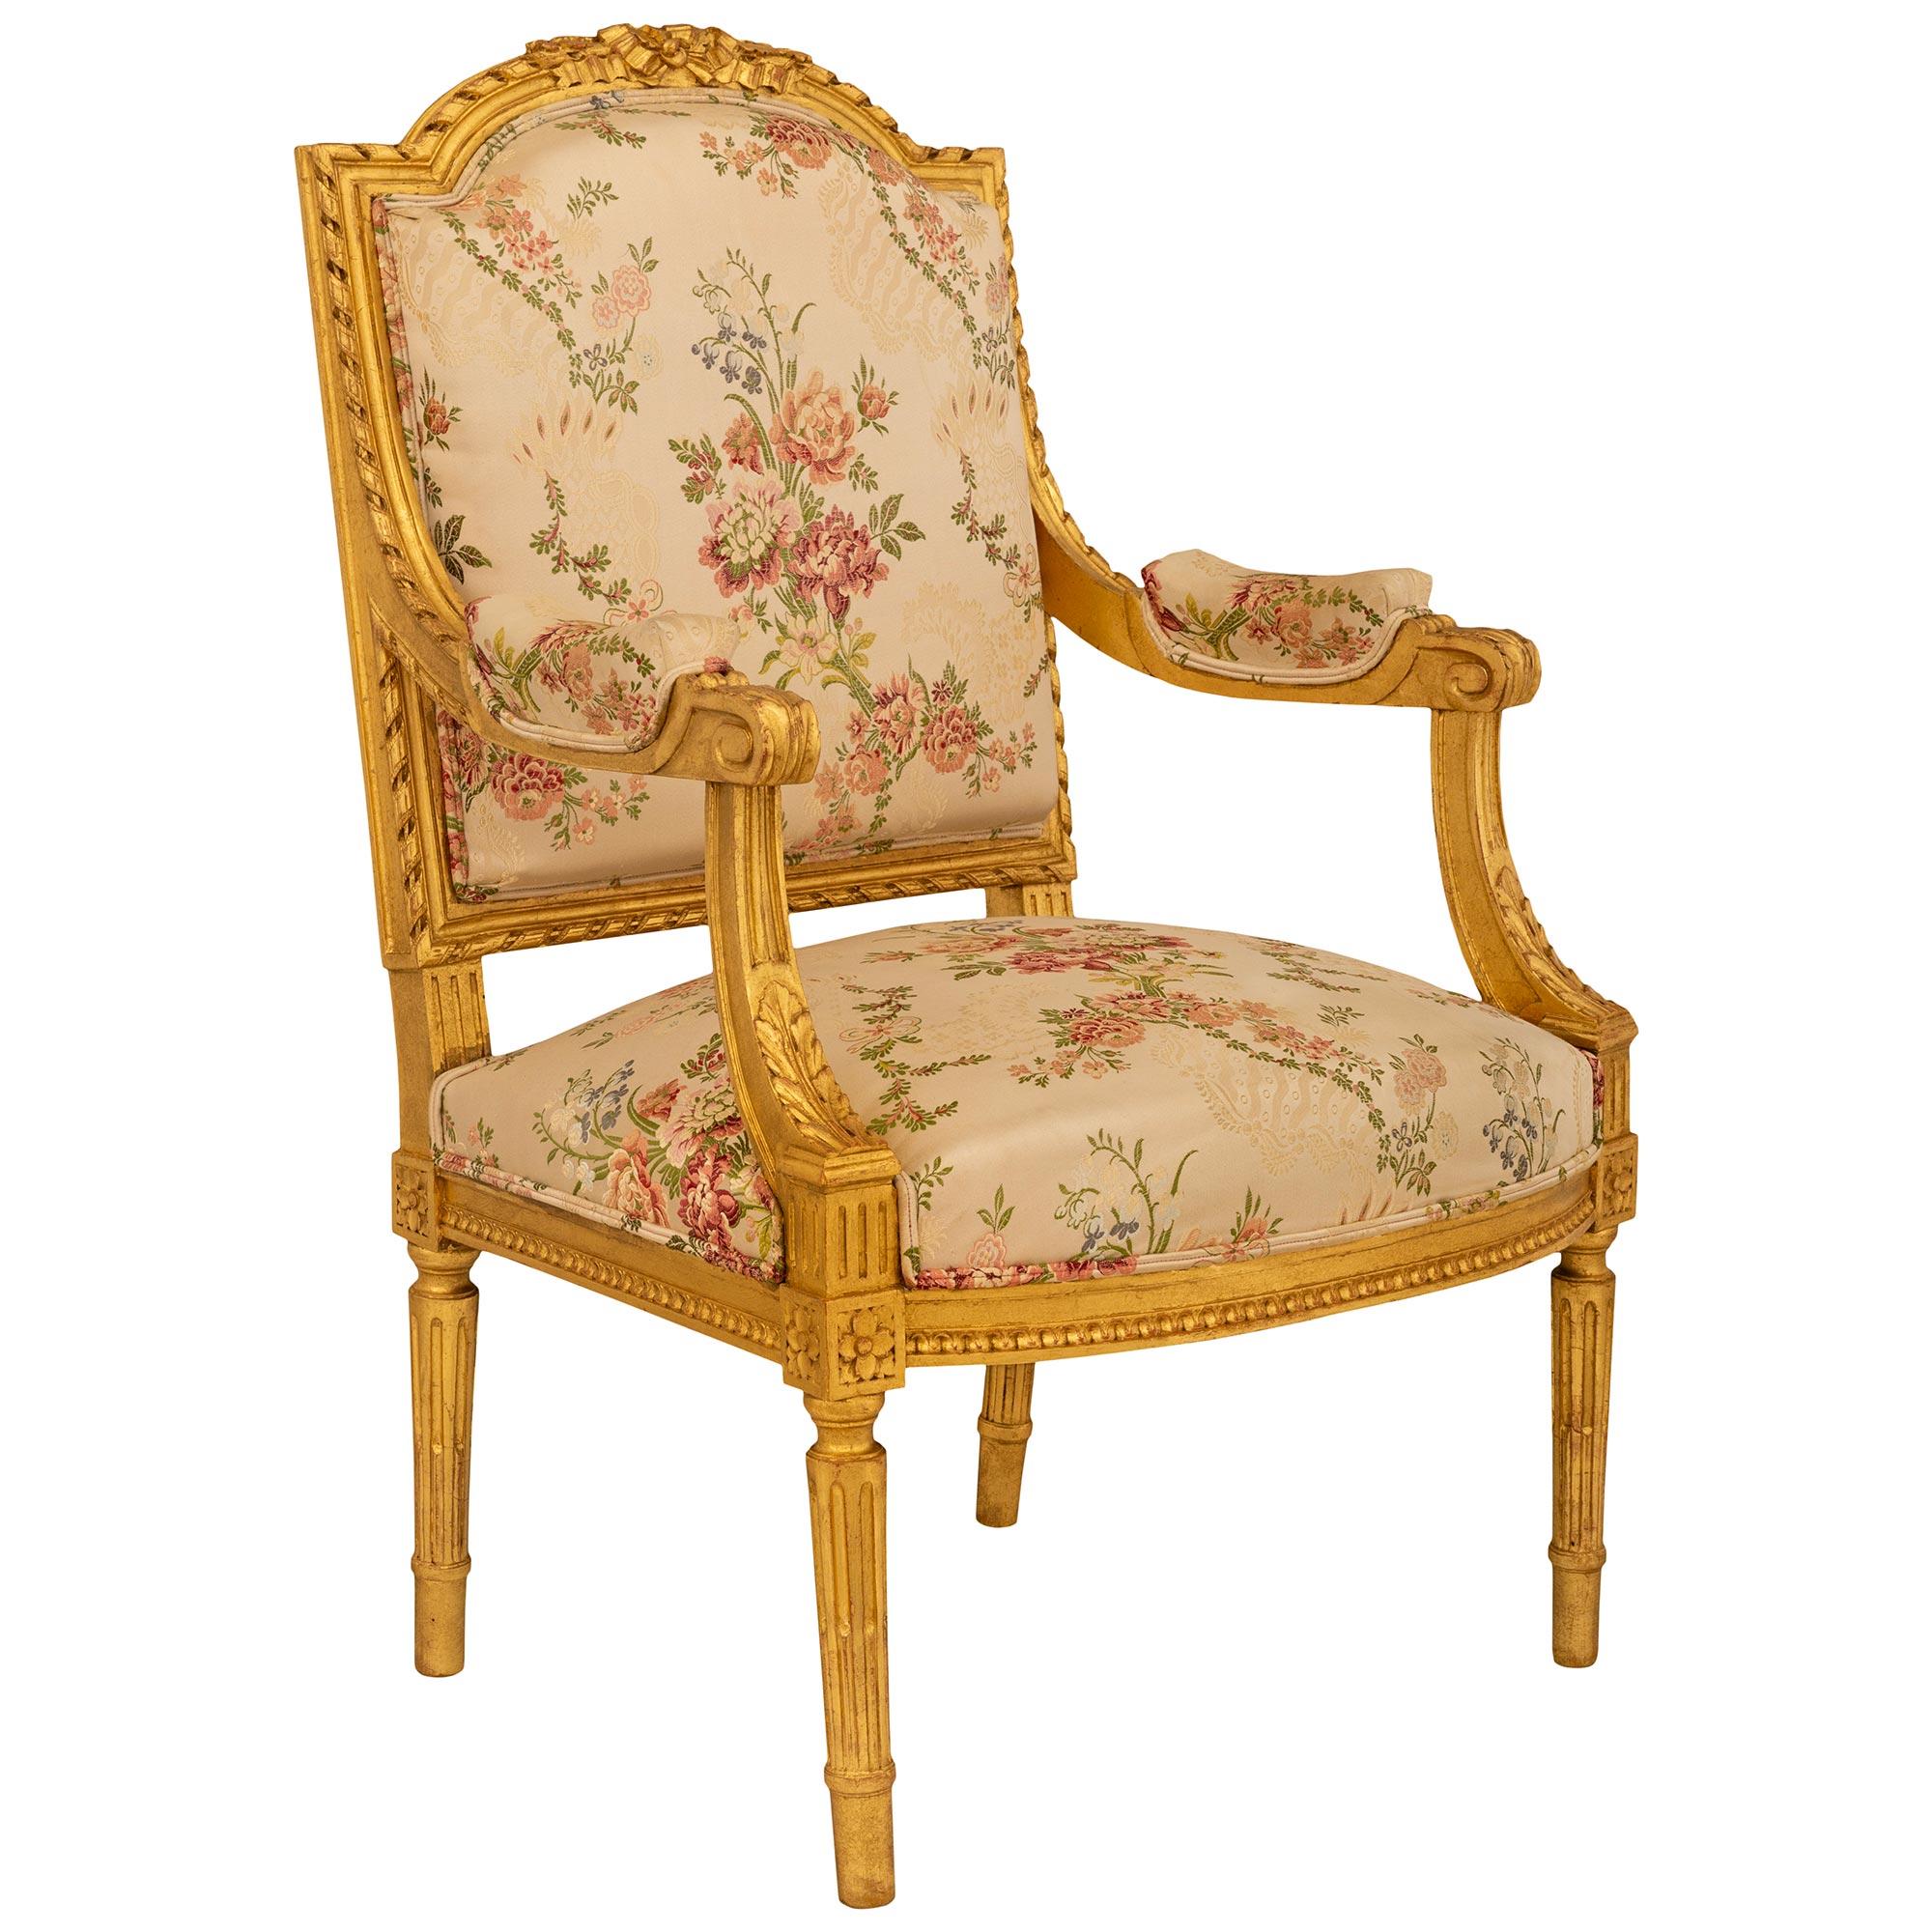 Ein elegantes Paar französischer Sessel aus Giltwood im Stil Louis XVI des 19. Jahrhunderts. Jeder Stuhl wird von vier runden, spitz zulaufenden und kannelierten Giltwood-Beinen mit reich geschnitzten Rosettenblöcken an der Spitze jedes Beins